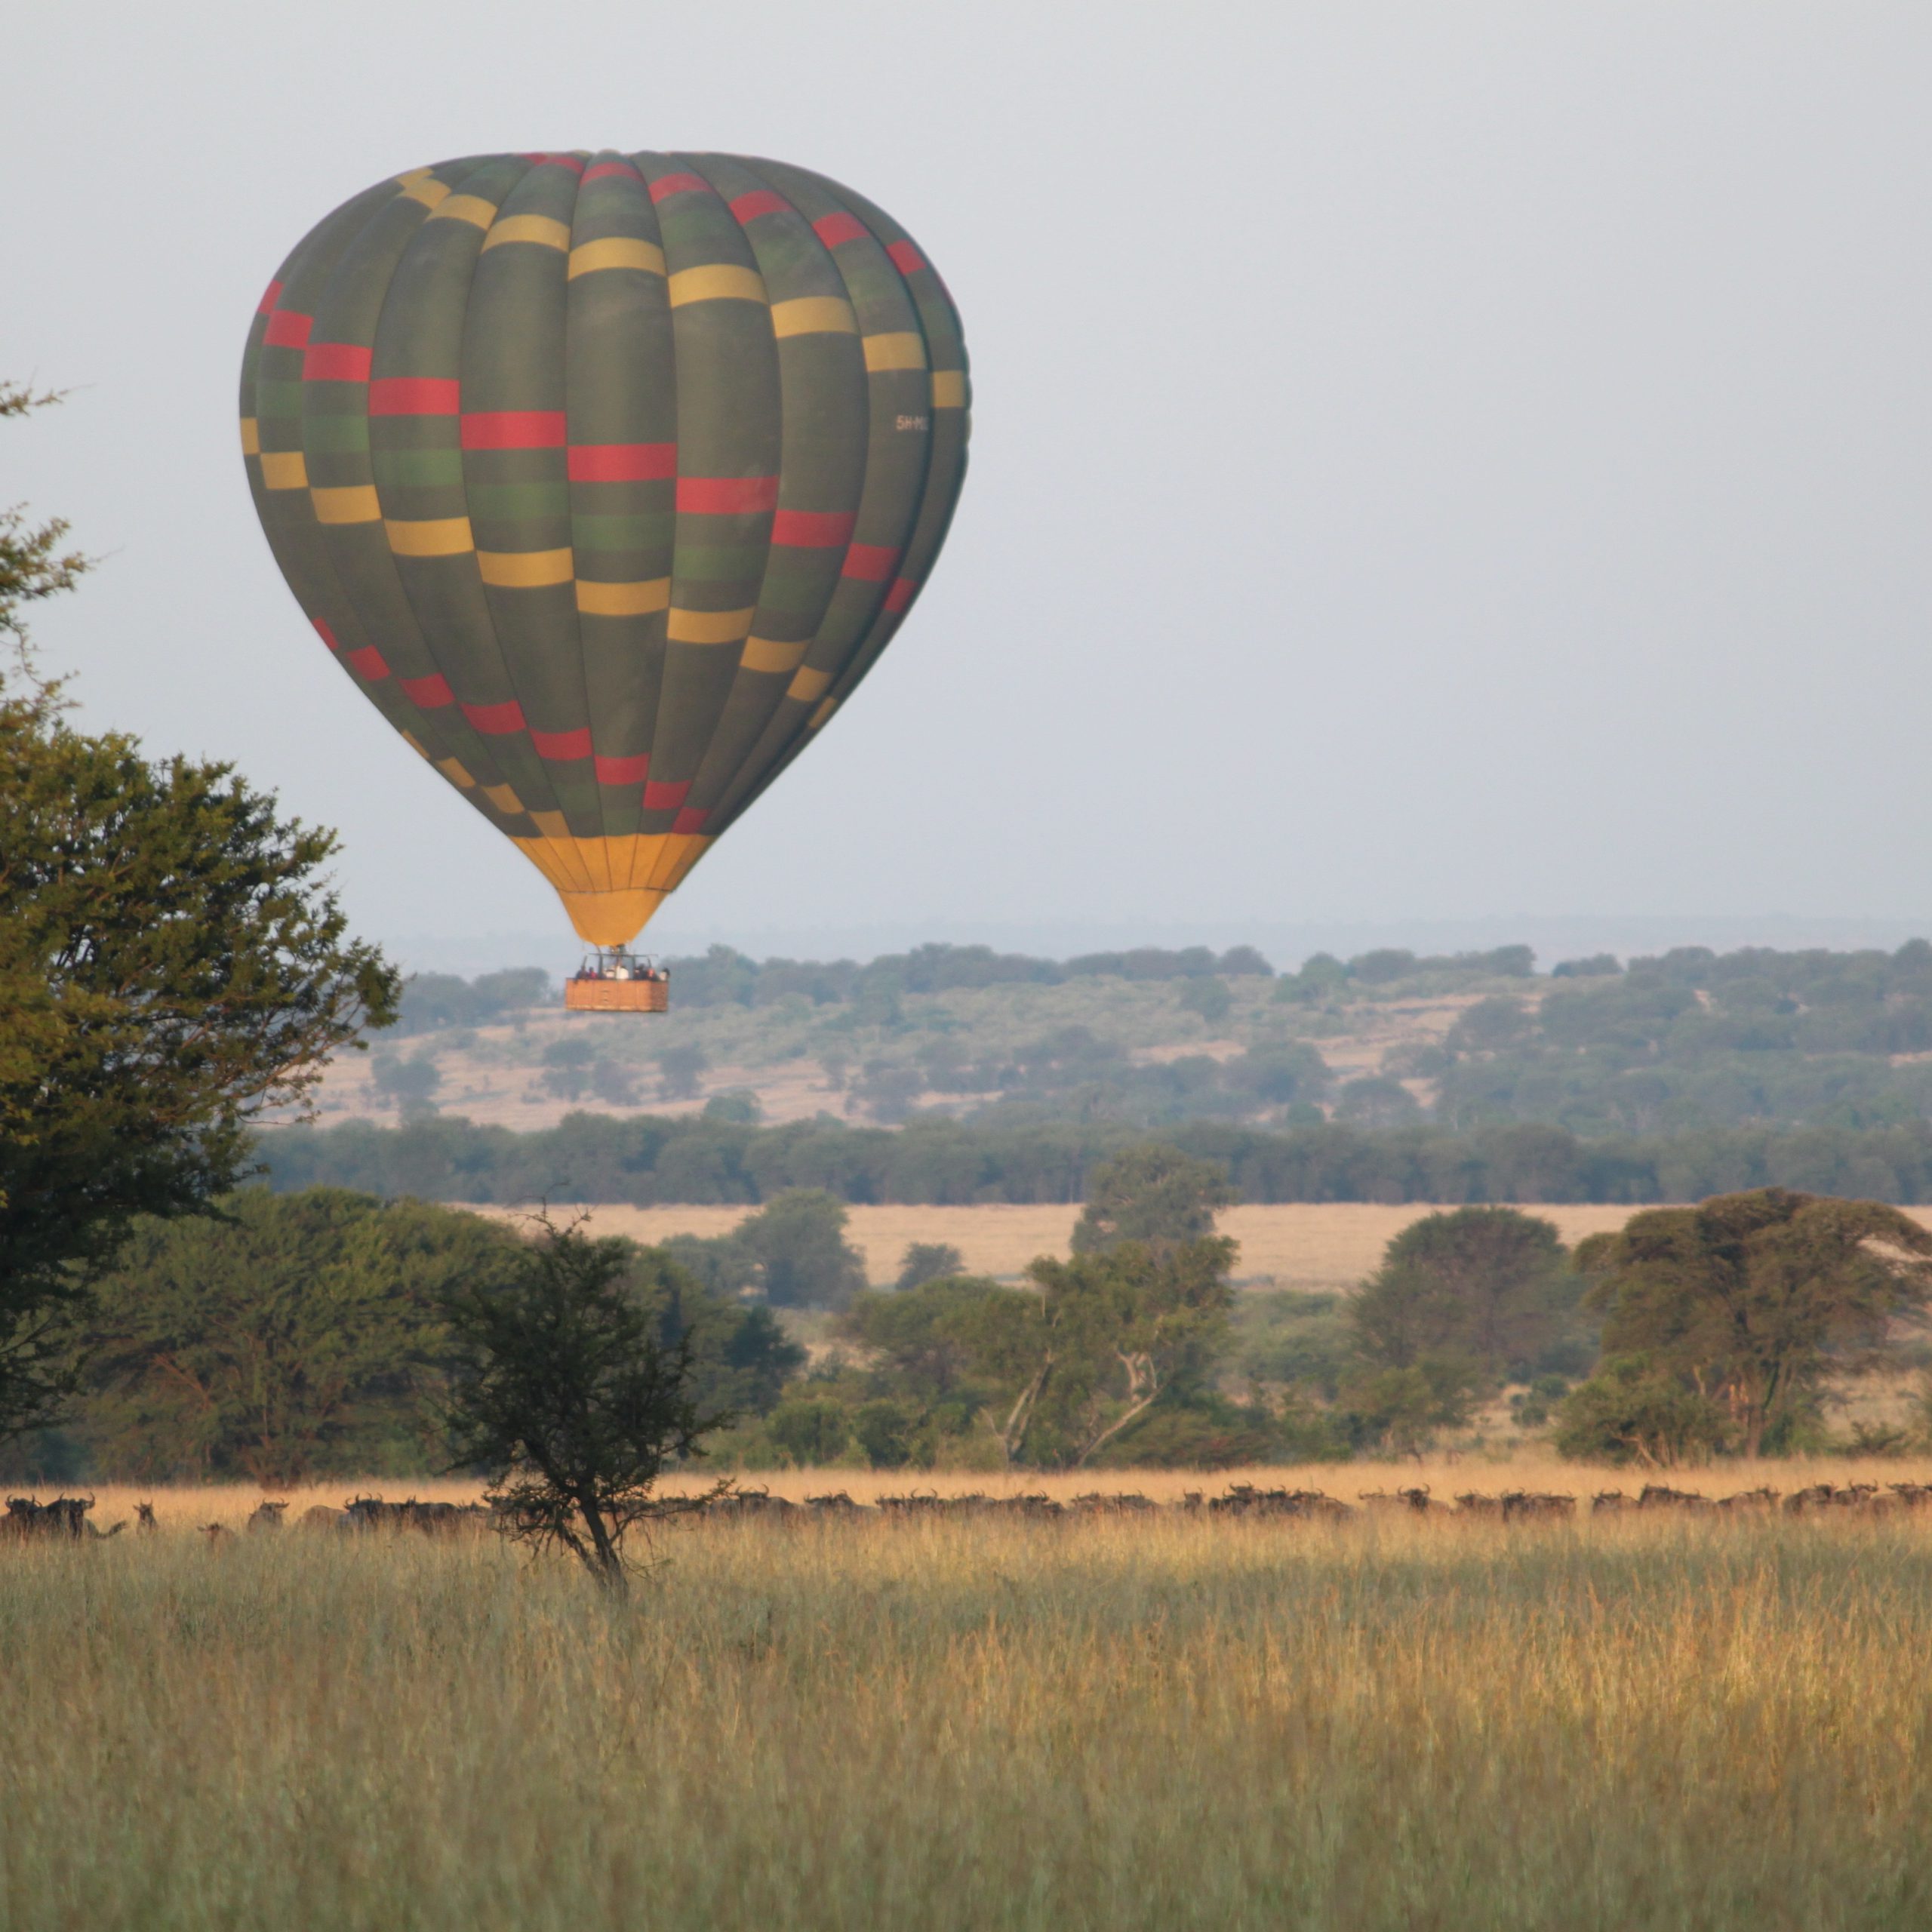  Day 4 Serengeti National Park Baloon Safari and Game Drive